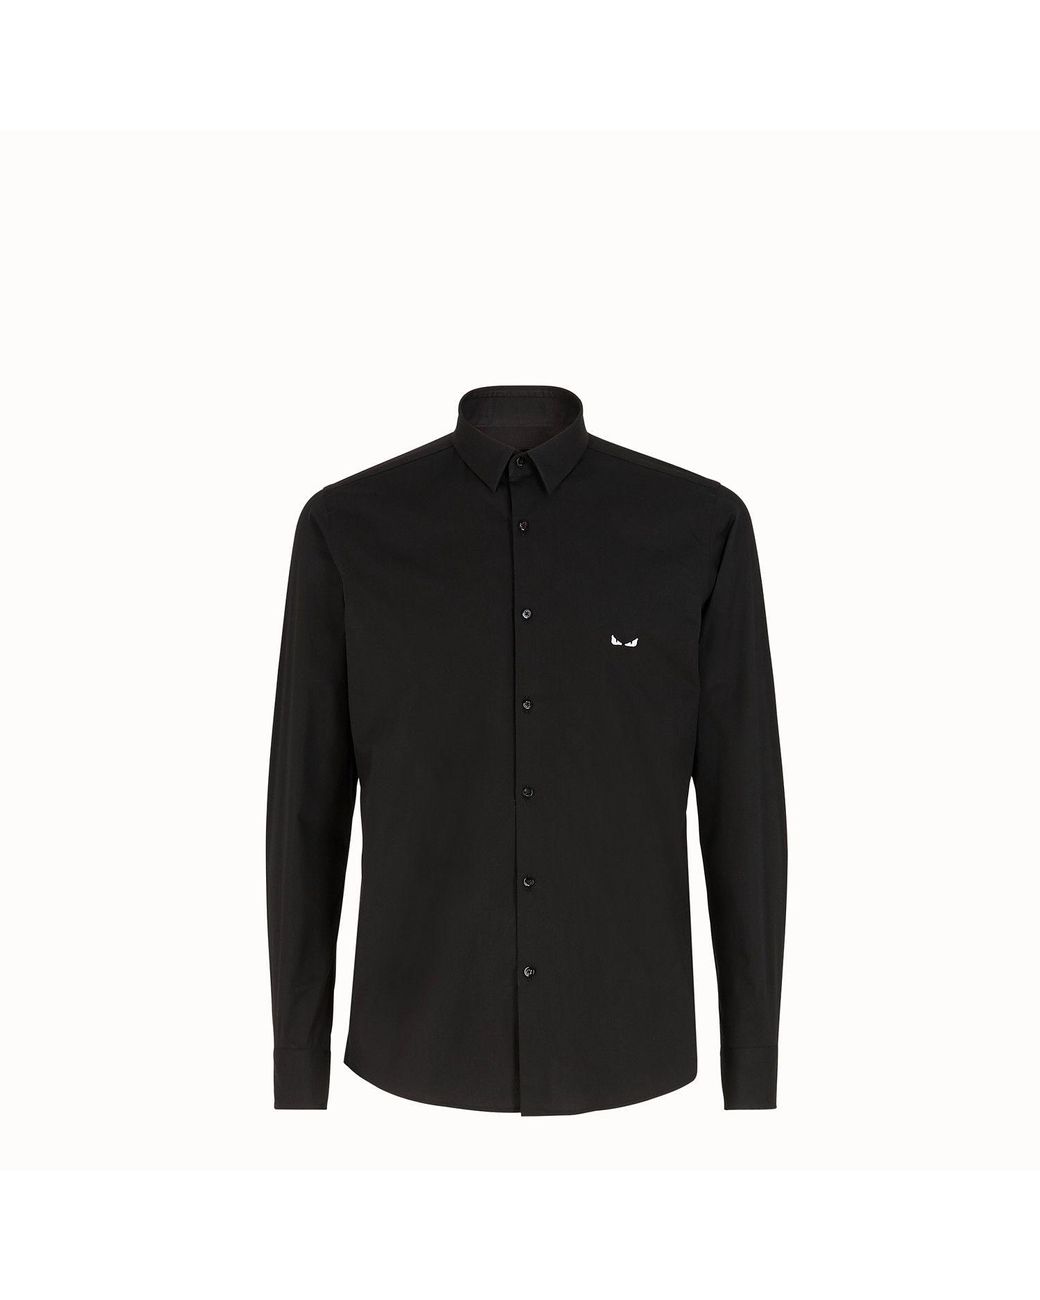 Fendi Cotton Shirt in Black for Men - Lyst